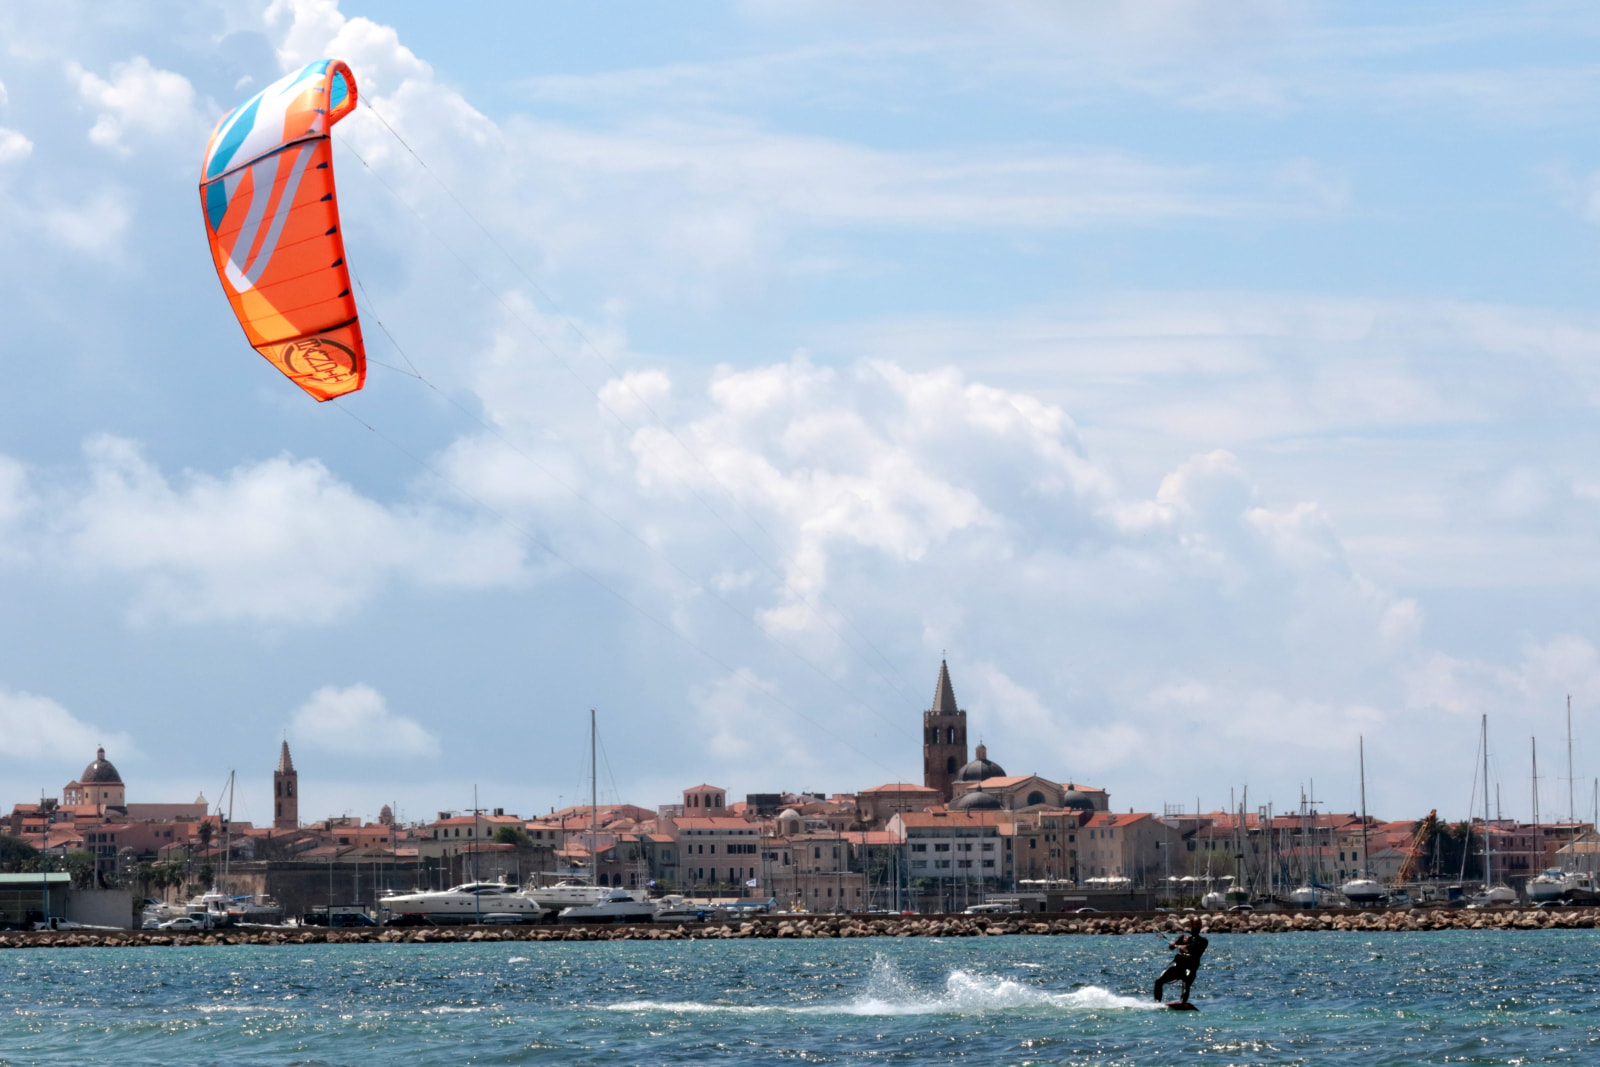 Kitesurf Sardinia Alghero Lido kitesurfing Pintadera activities